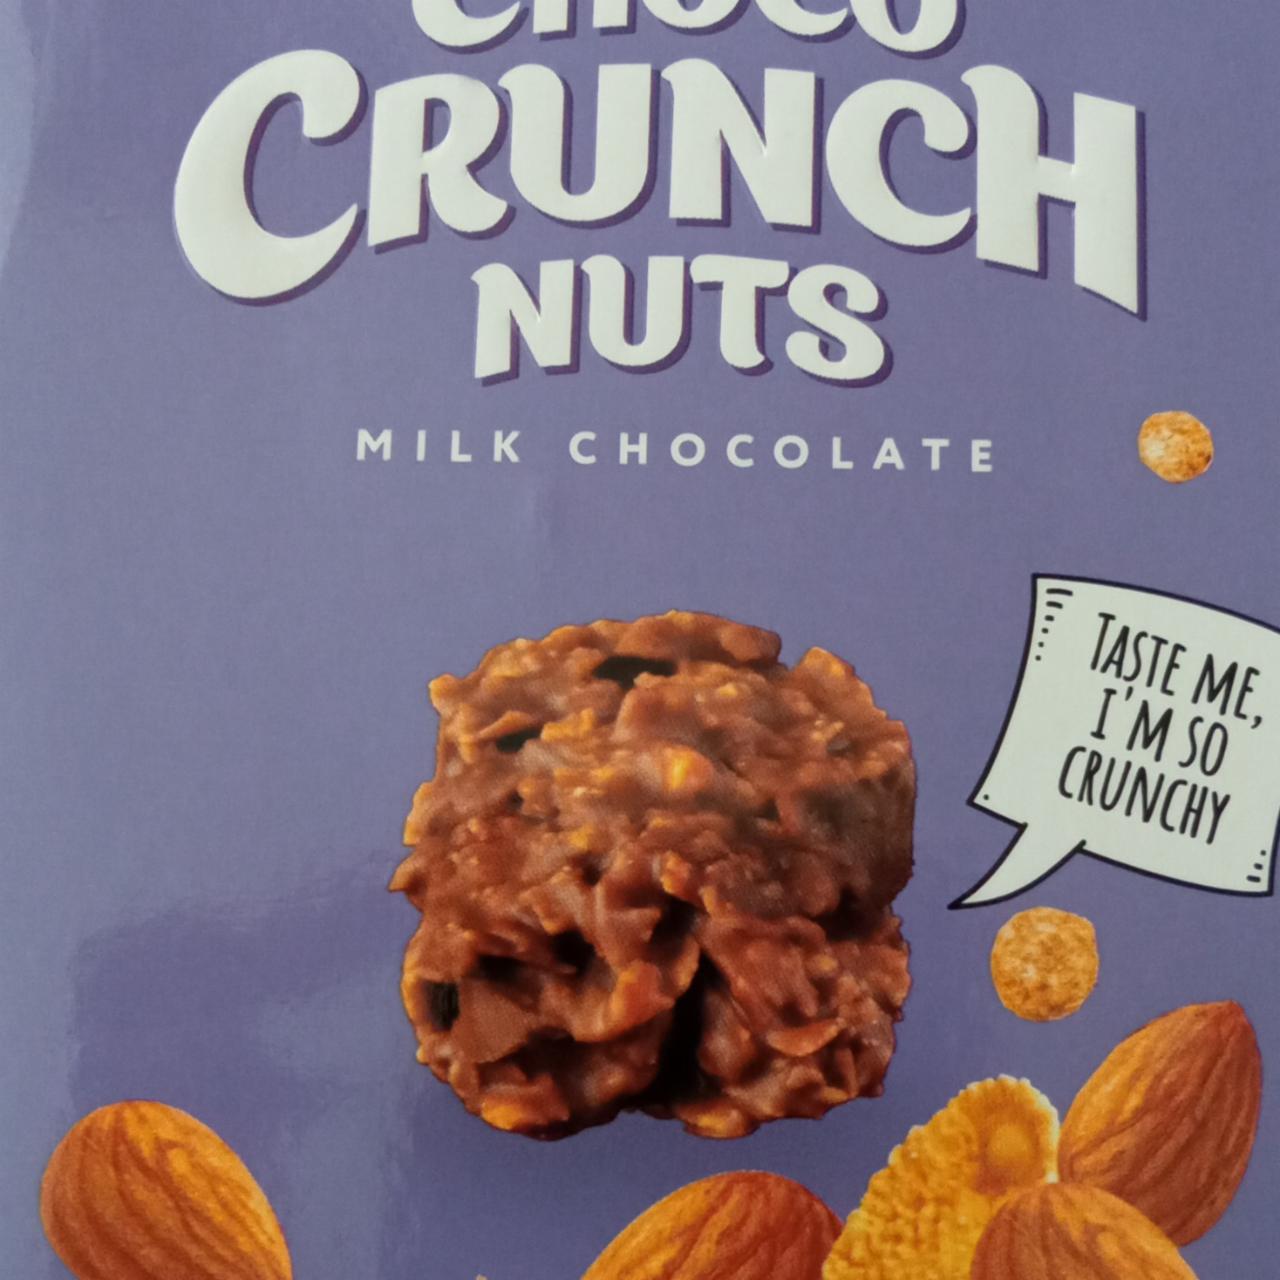 Fotografie - Choco Crunch nuts milk chocolate Millennium